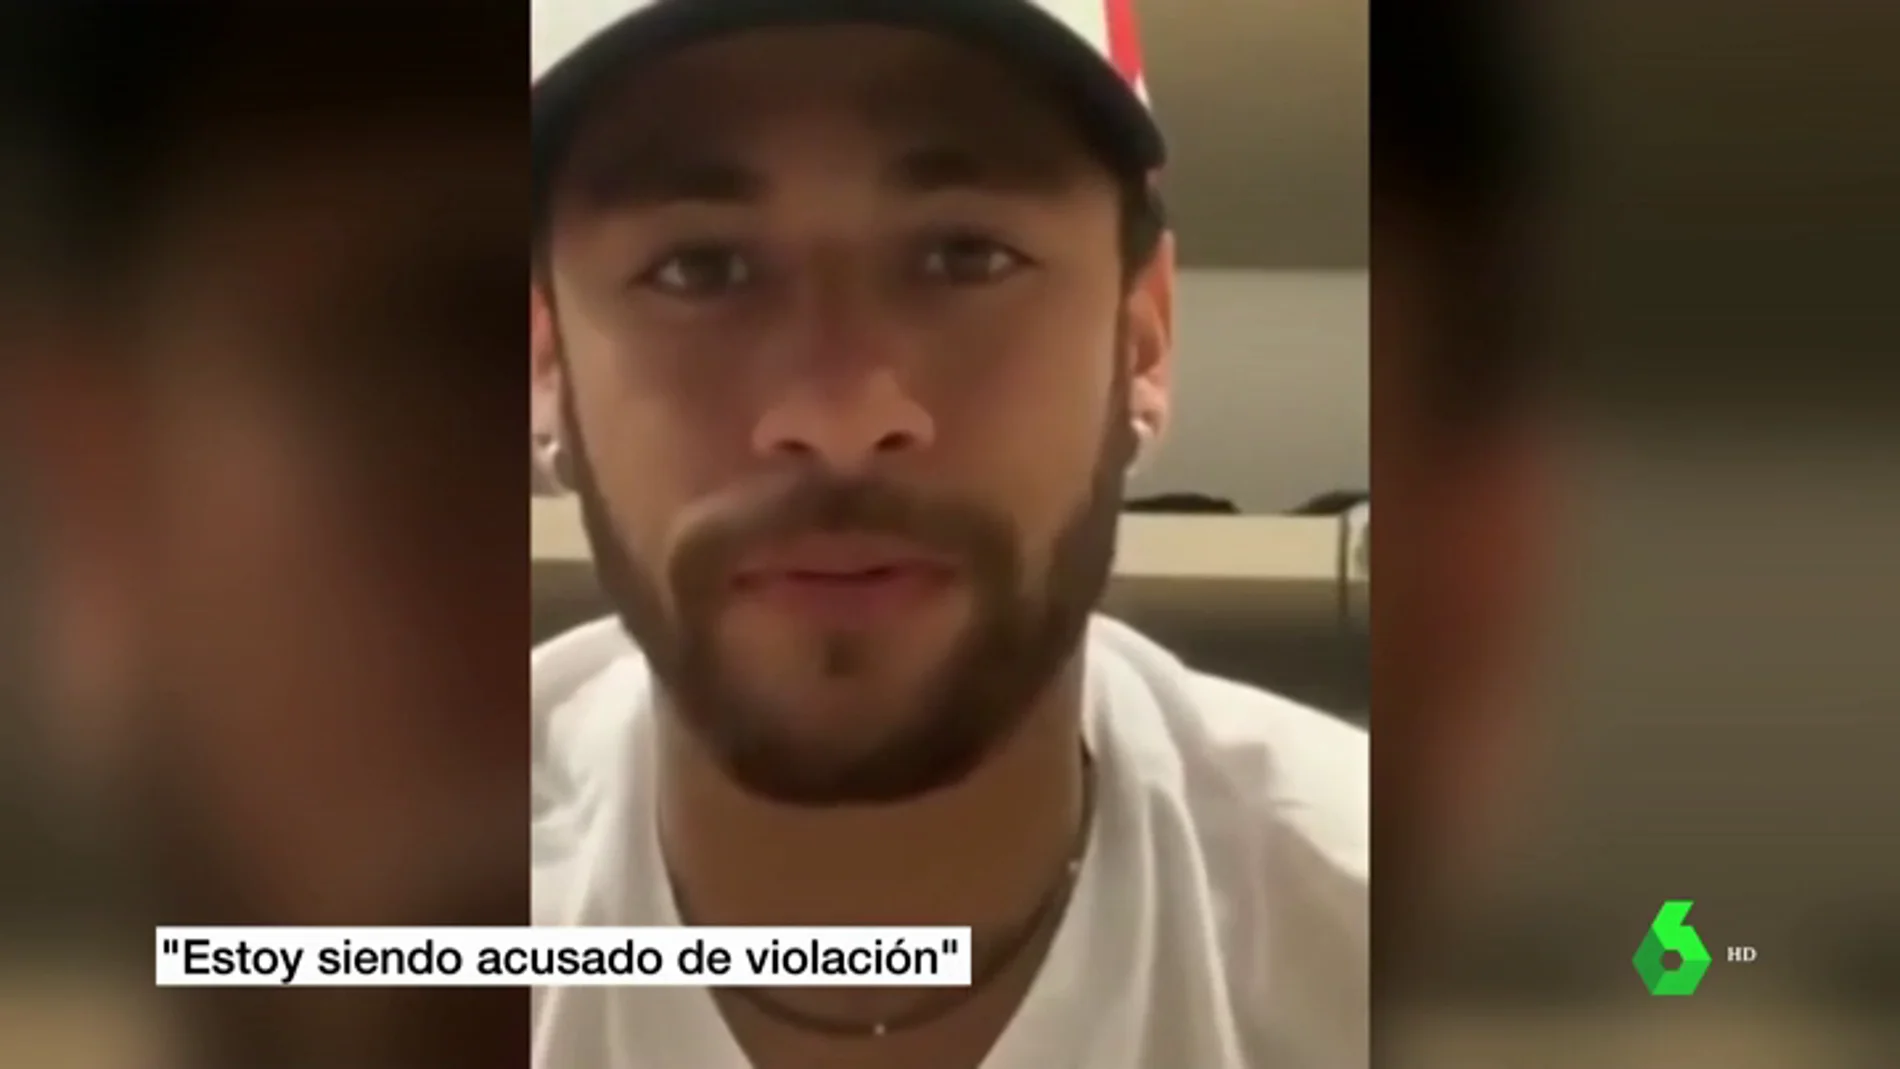 La Policía va a investigar a Neymar por la divulgación de fotos íntimas de la chica que le ha denunciado por presunta violación